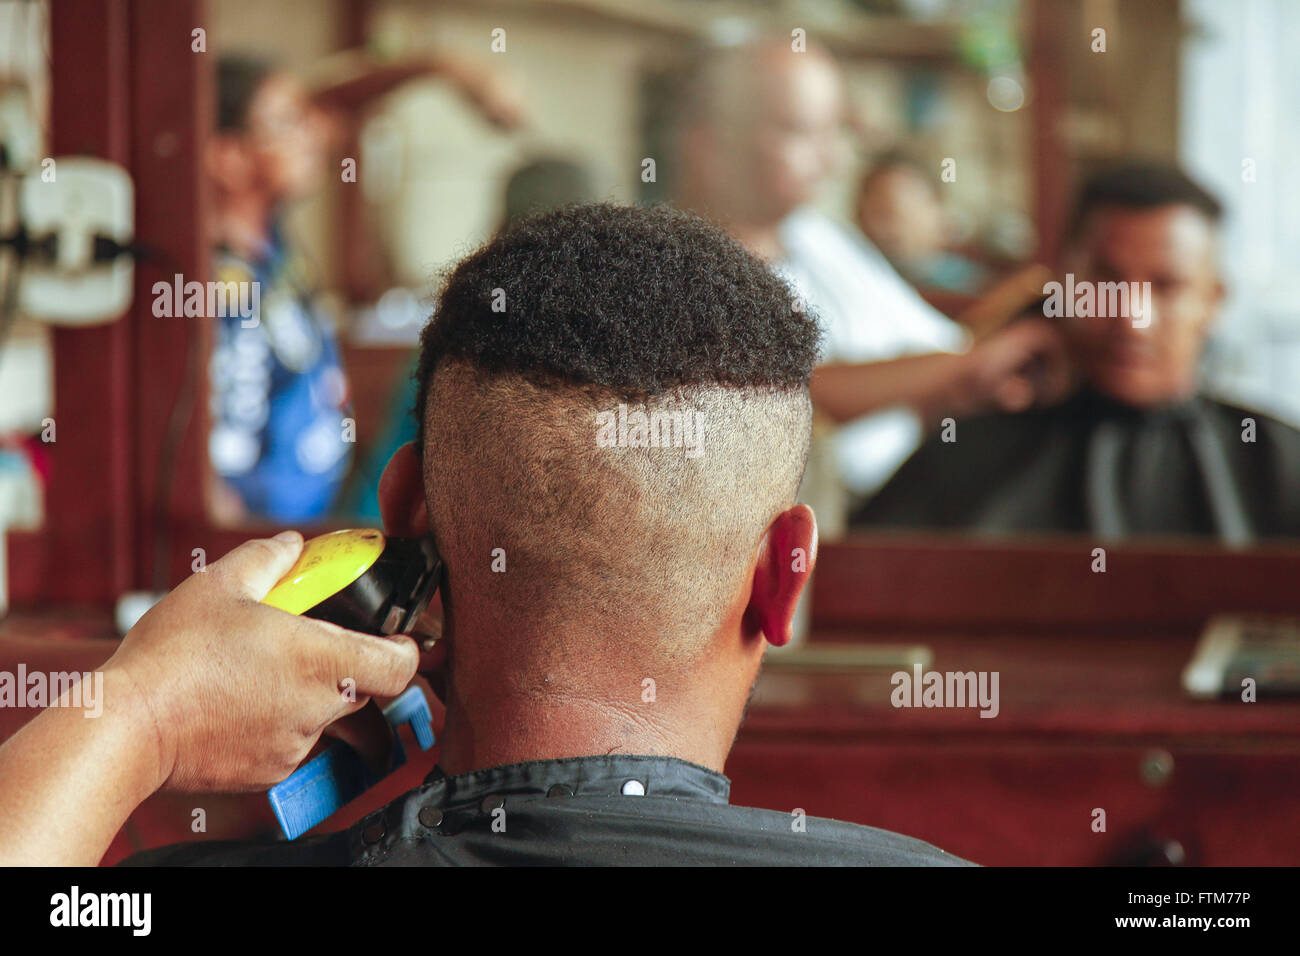 Corte de cabelo com maquina eletrica em barbearia do Mercado Ver-o-Peso  Stock Photo - Alamy